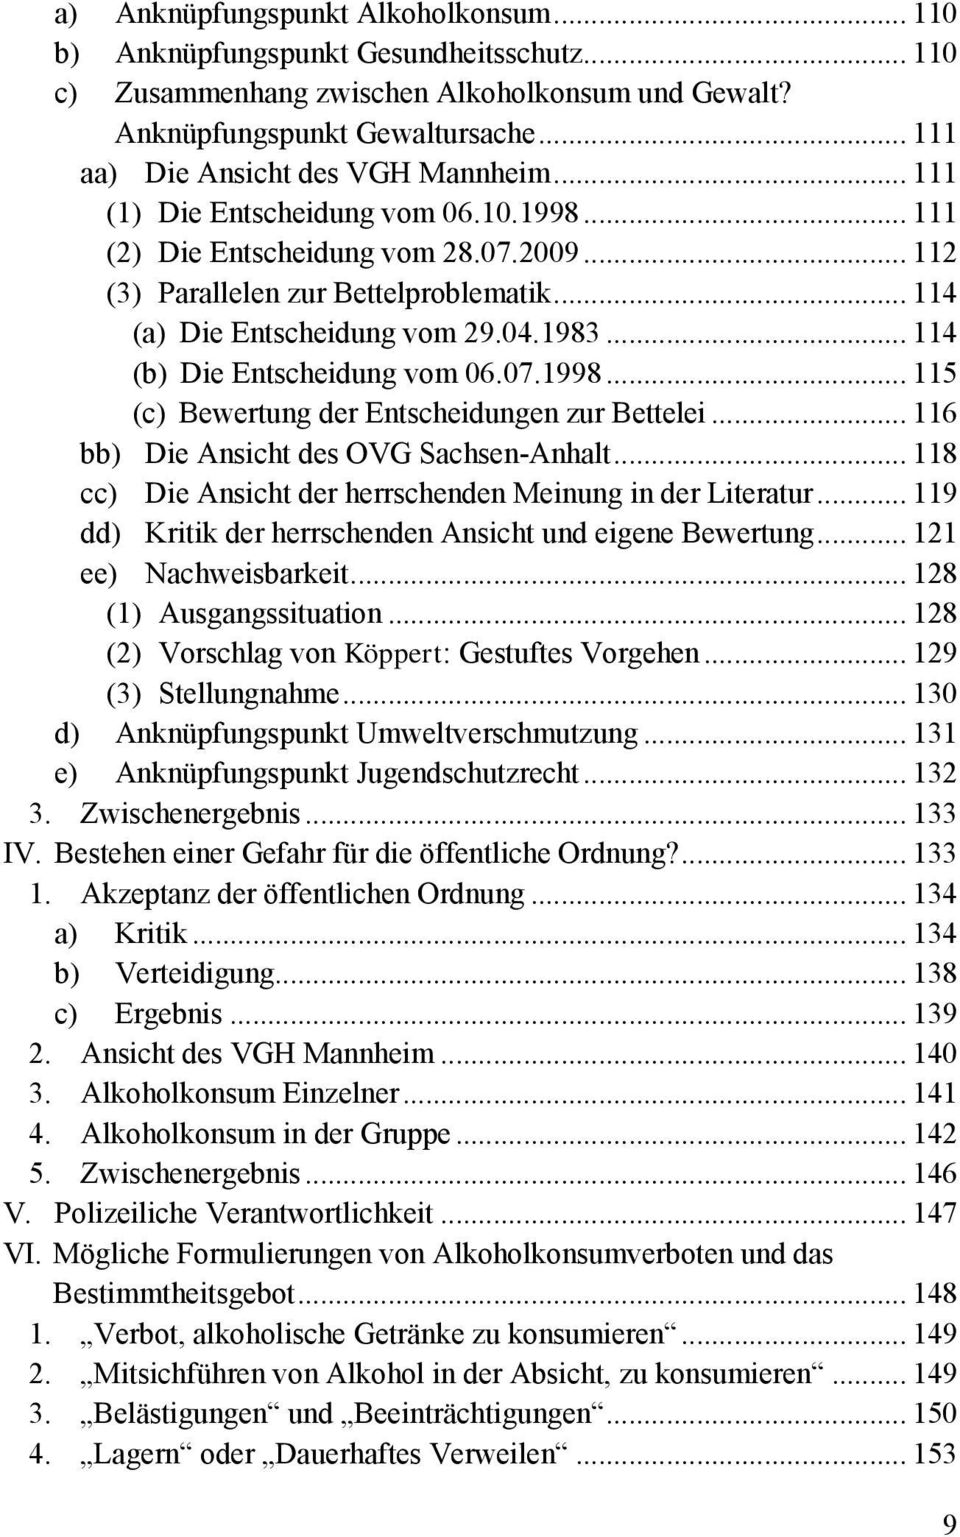 .. 114 (a) Die Entscheidung vom 29.04.1983... 114 (b) Die Entscheidung vom 06.07.1998... 115 (c) Bewertung der Entscheidungen zur Bettelei... 116 bb) Die Ansicht des OVG Sachsen-Anhalt.